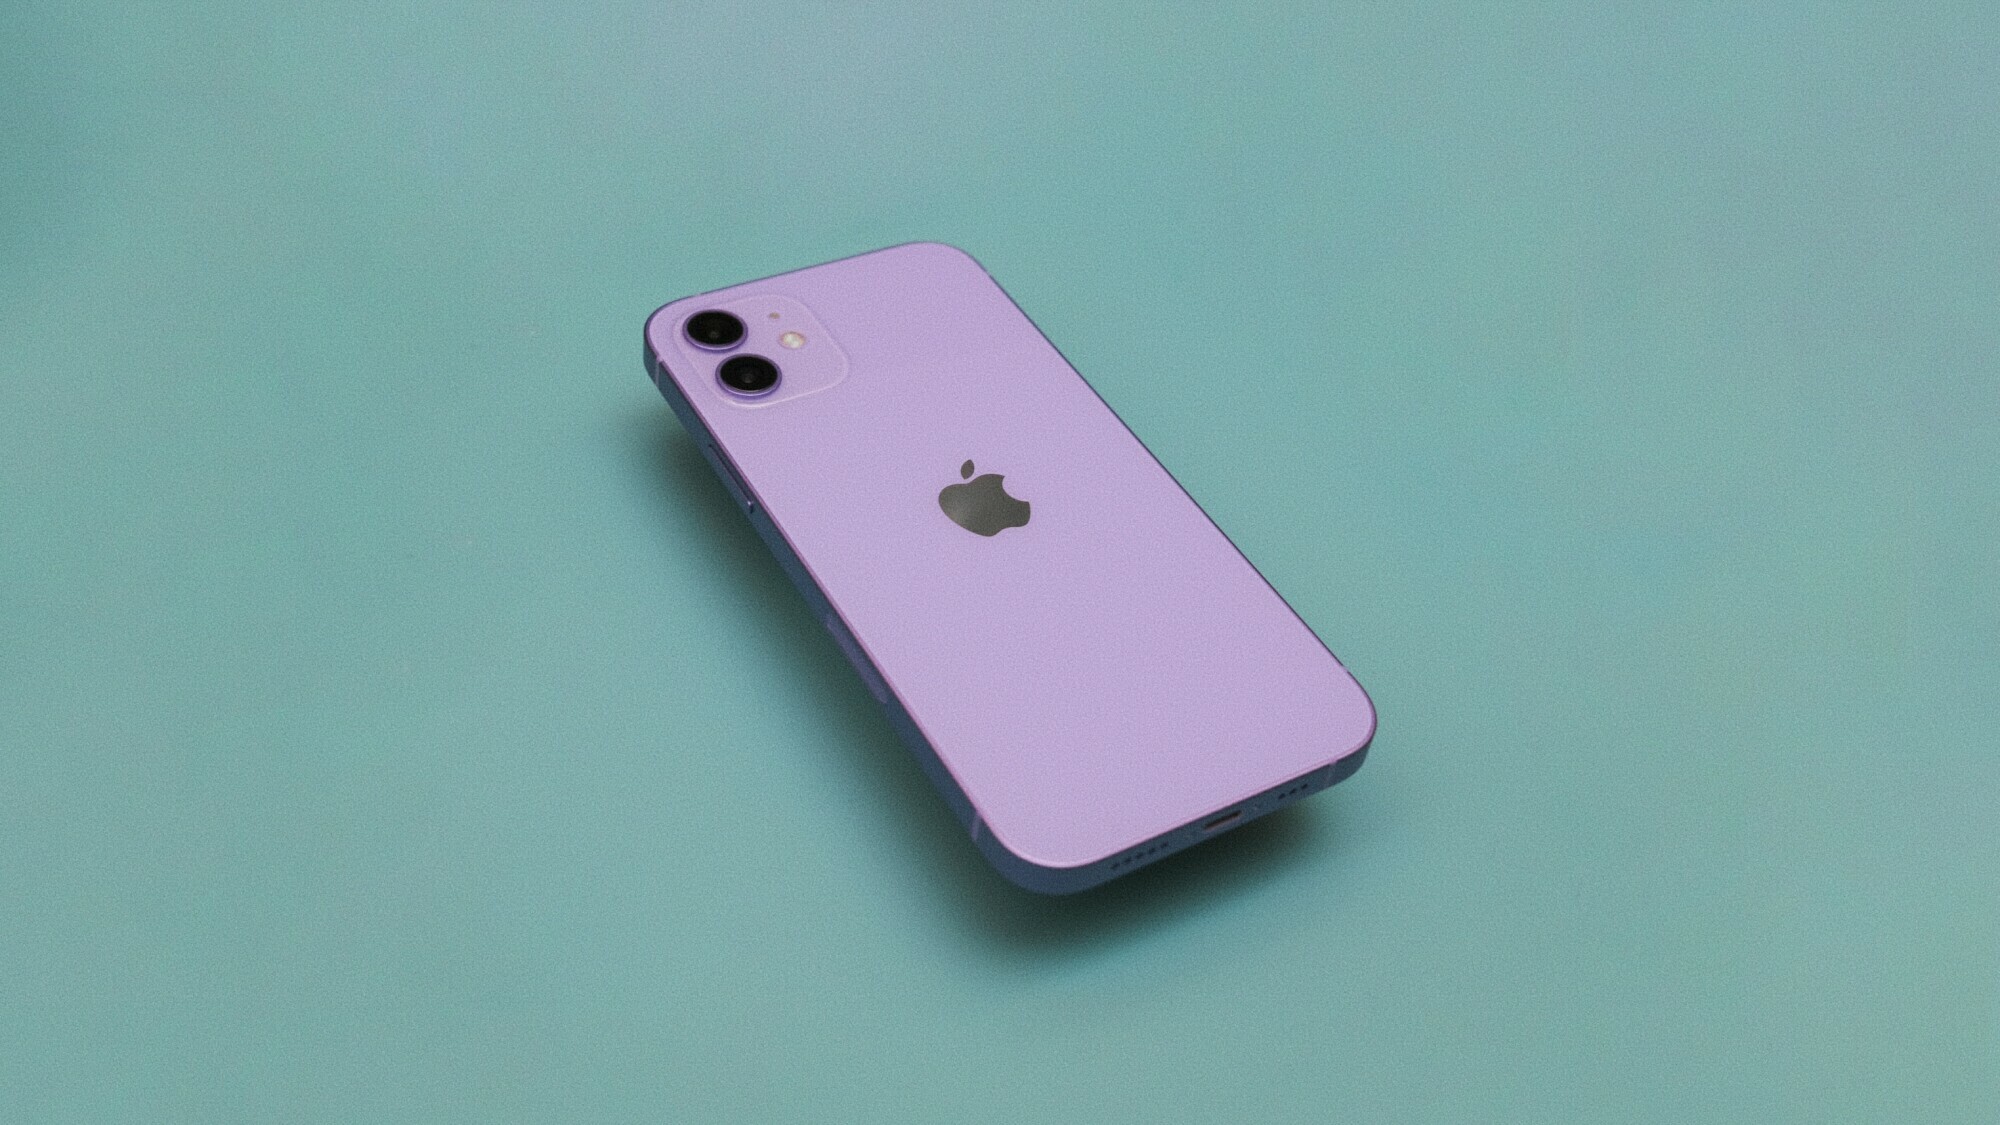 El iPhone 12 violeta claro está boca abajo sobre una superficie verde.